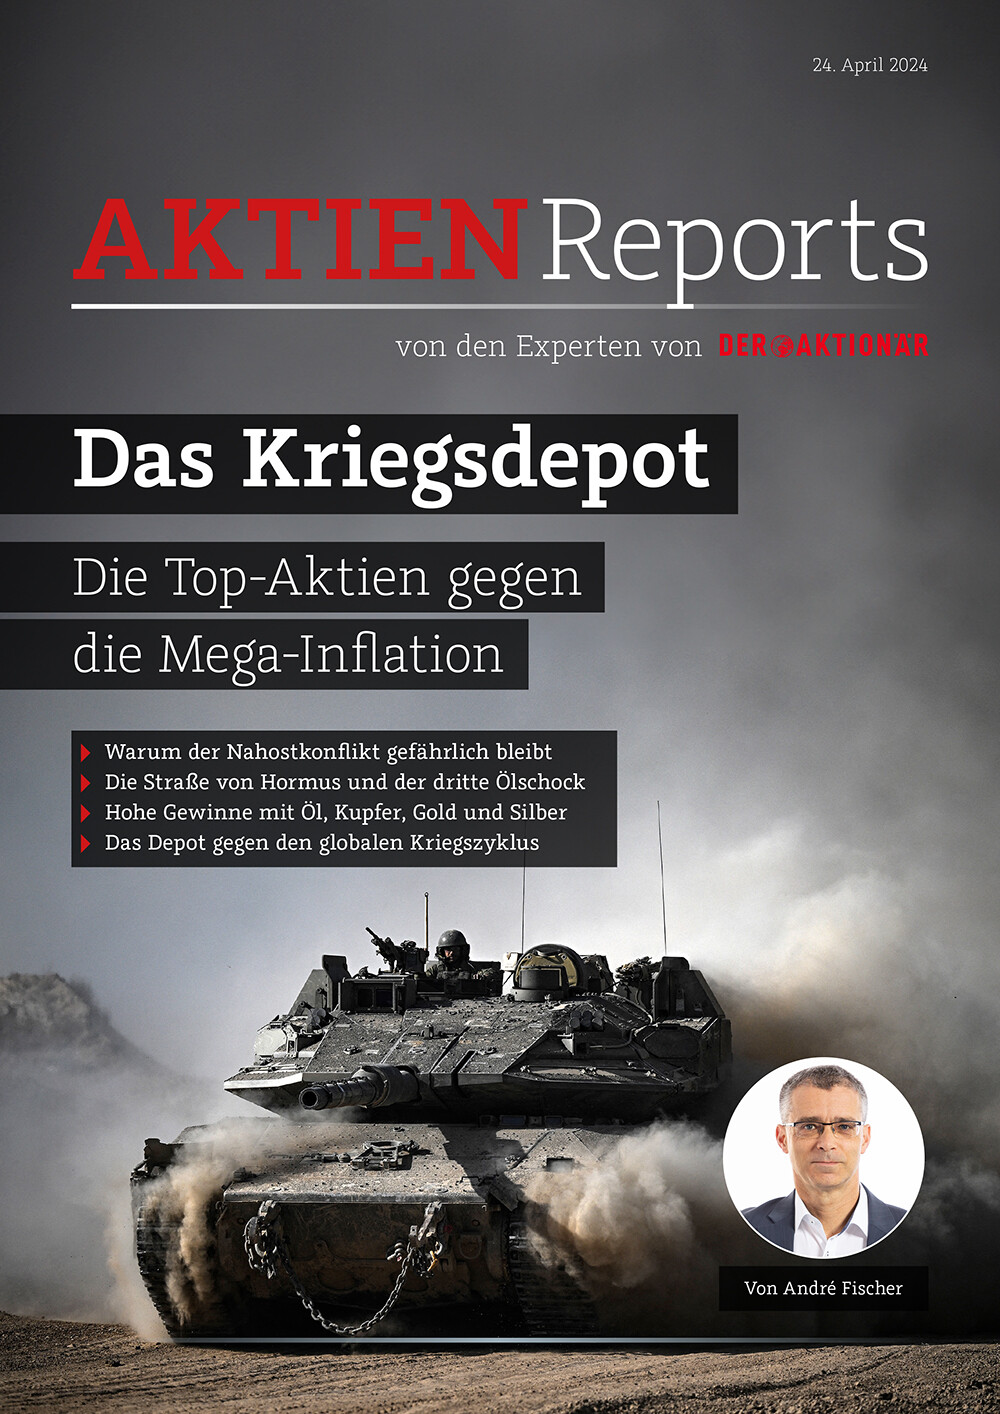 Die Top-Aktien gegen die Mega-Inflation – jetzt im neuen AKTIEN-Report